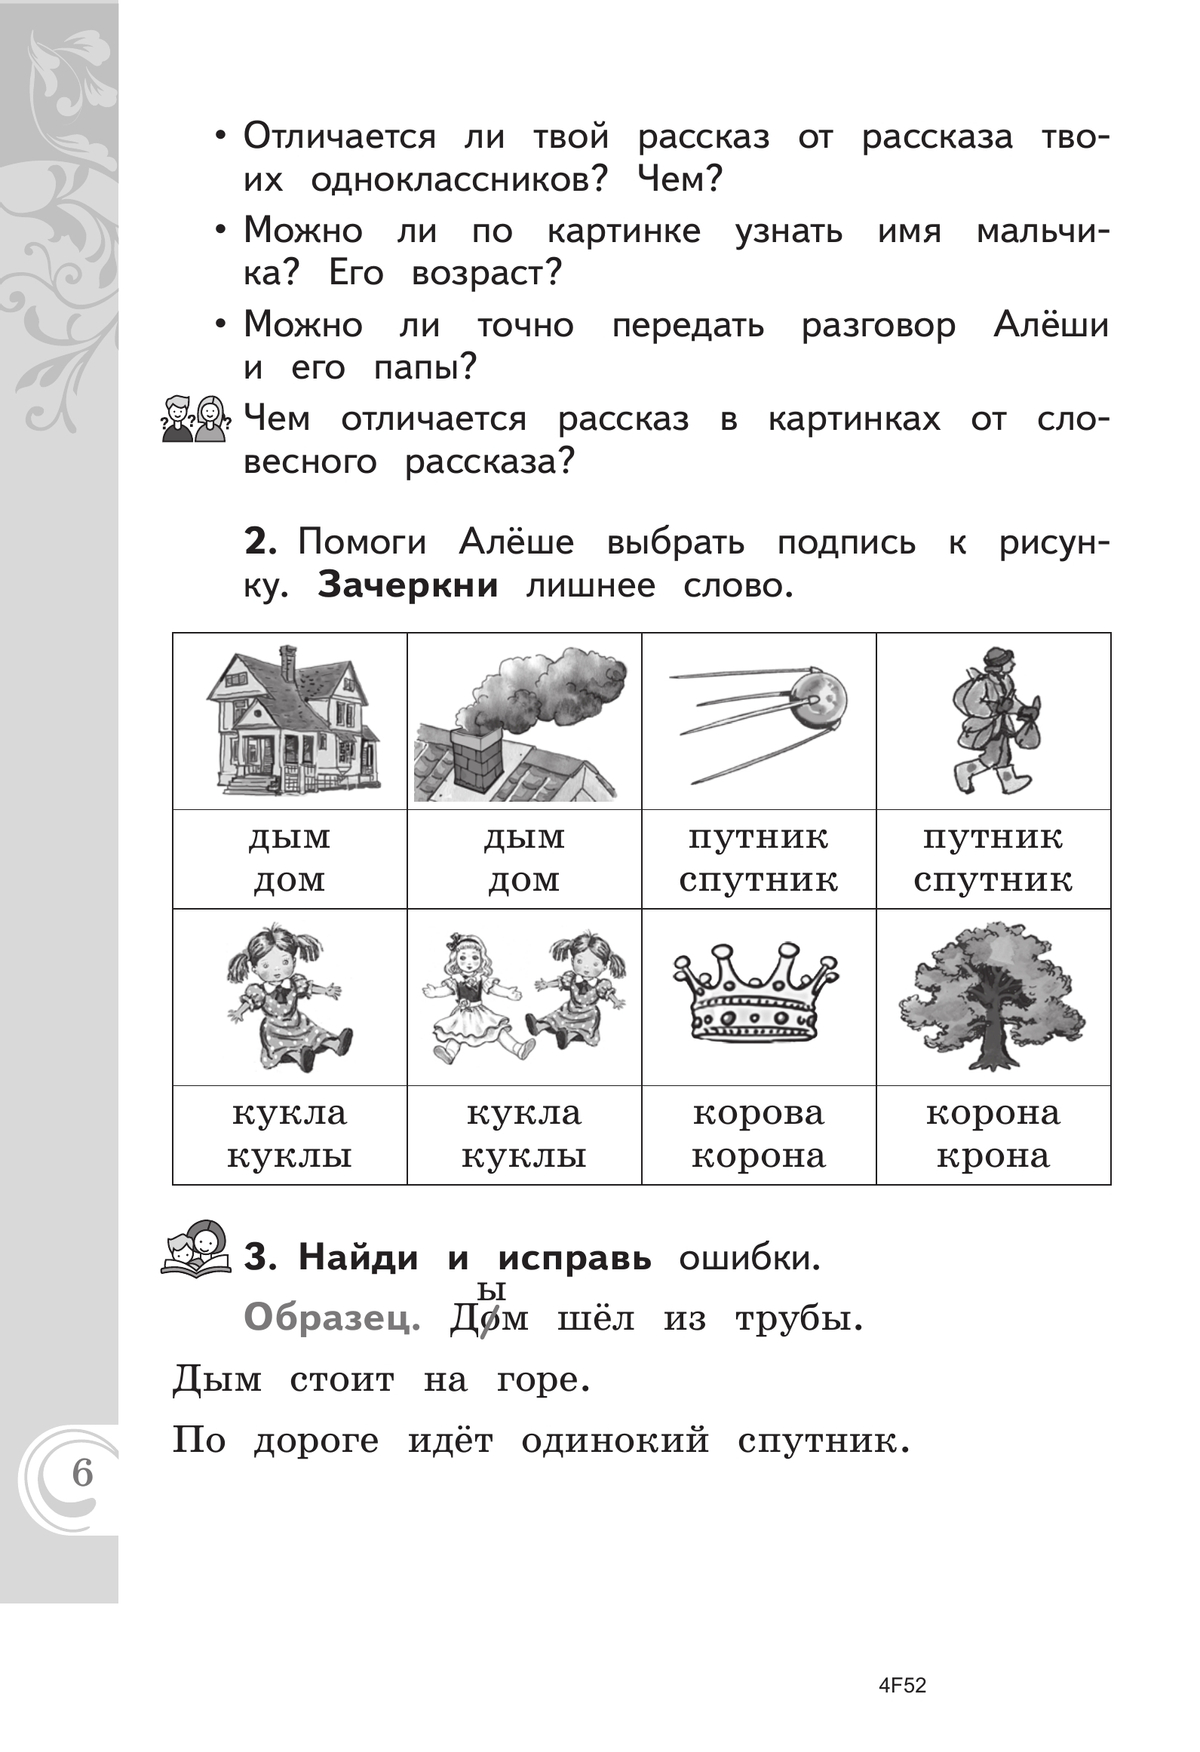 Литературное чтение на русском родном языке. 1 класс. Практикум 3